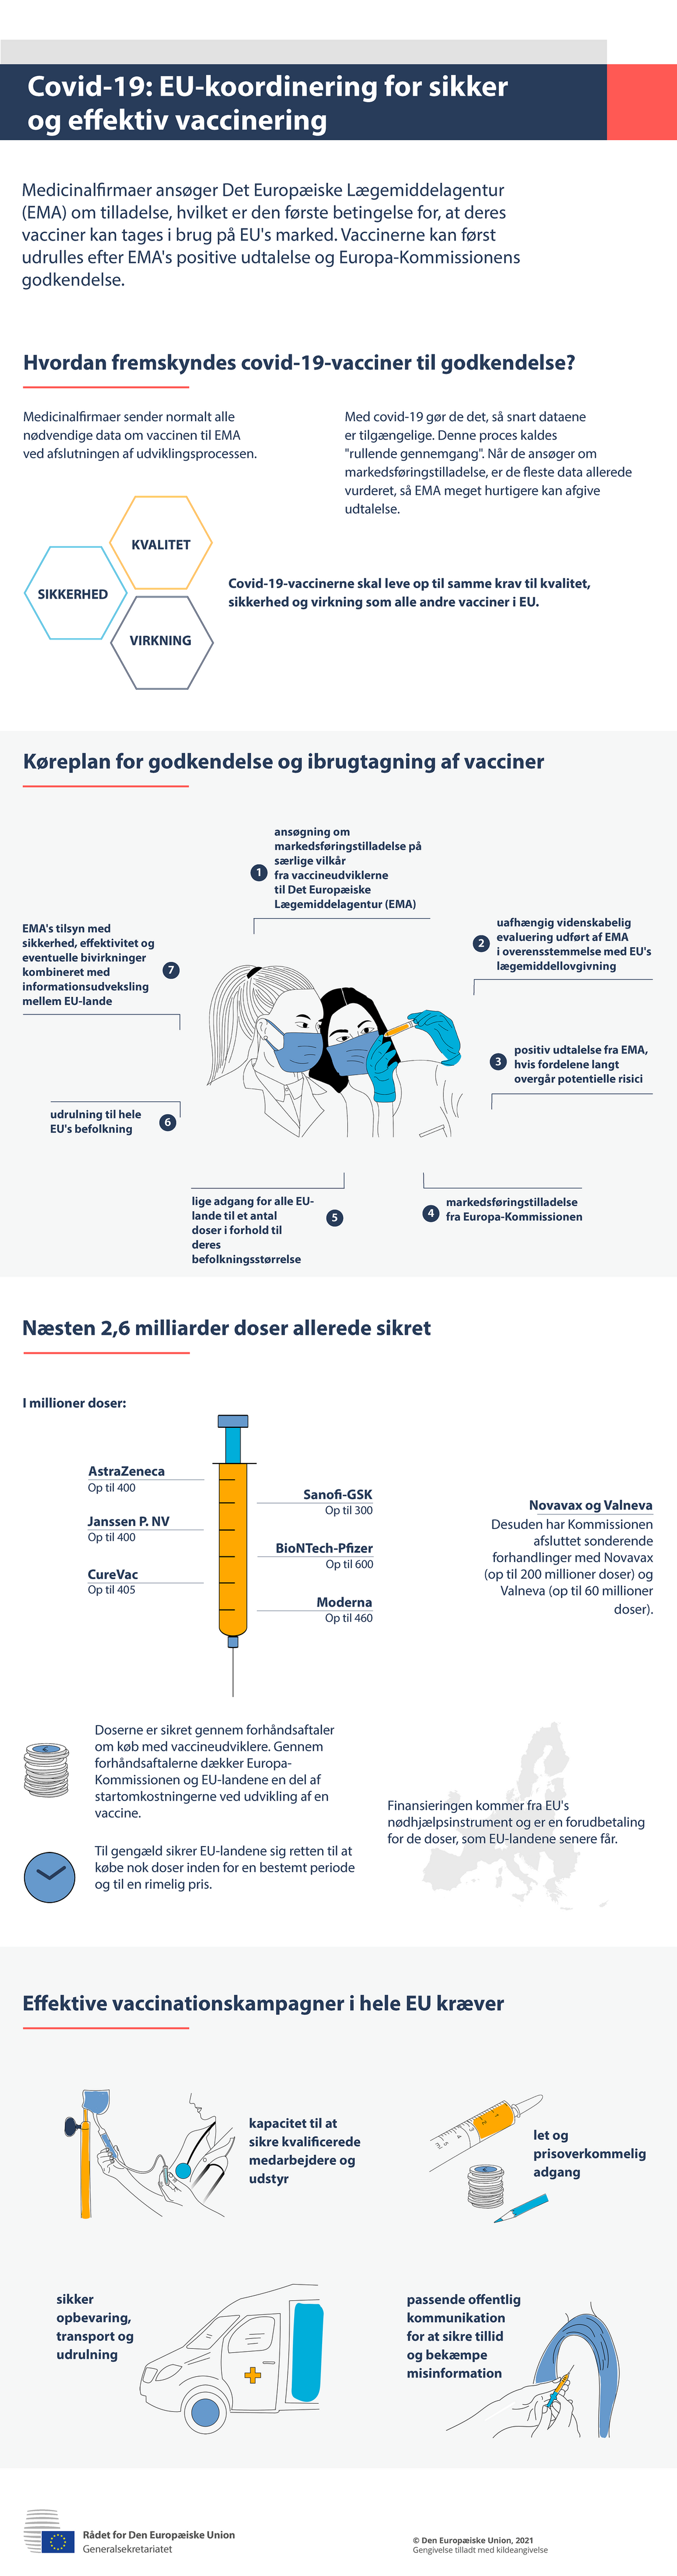 Infografik — covid-19: EU-koordinering for sikker og effektiv vaccinering